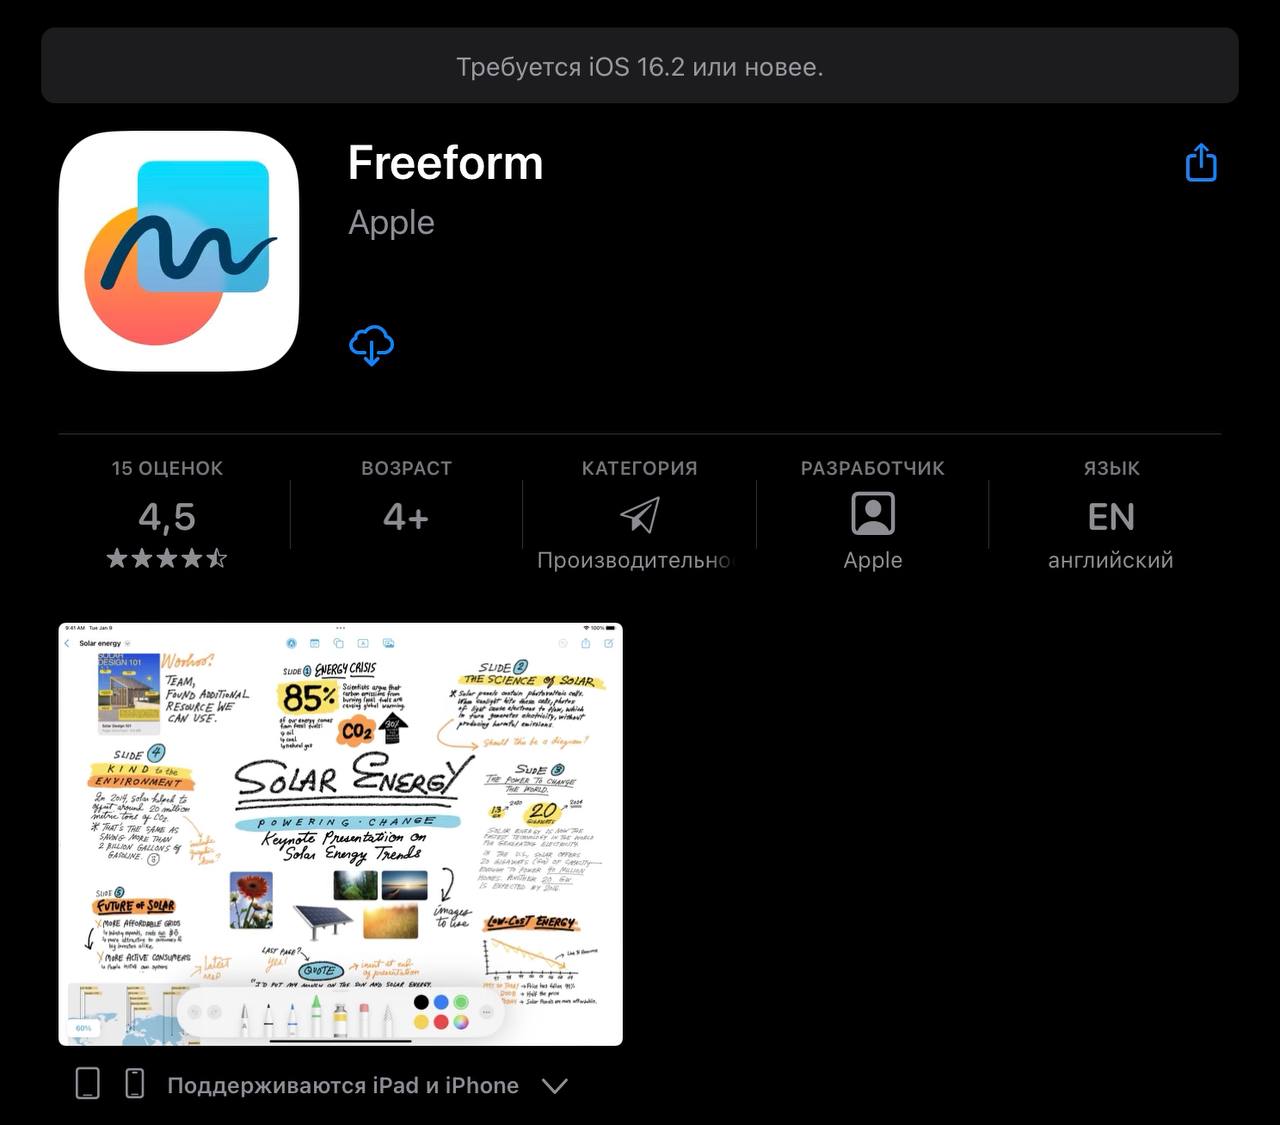 Приложение Freeform также доступно в App Store, для установки нужна версия 16.2 и новее 